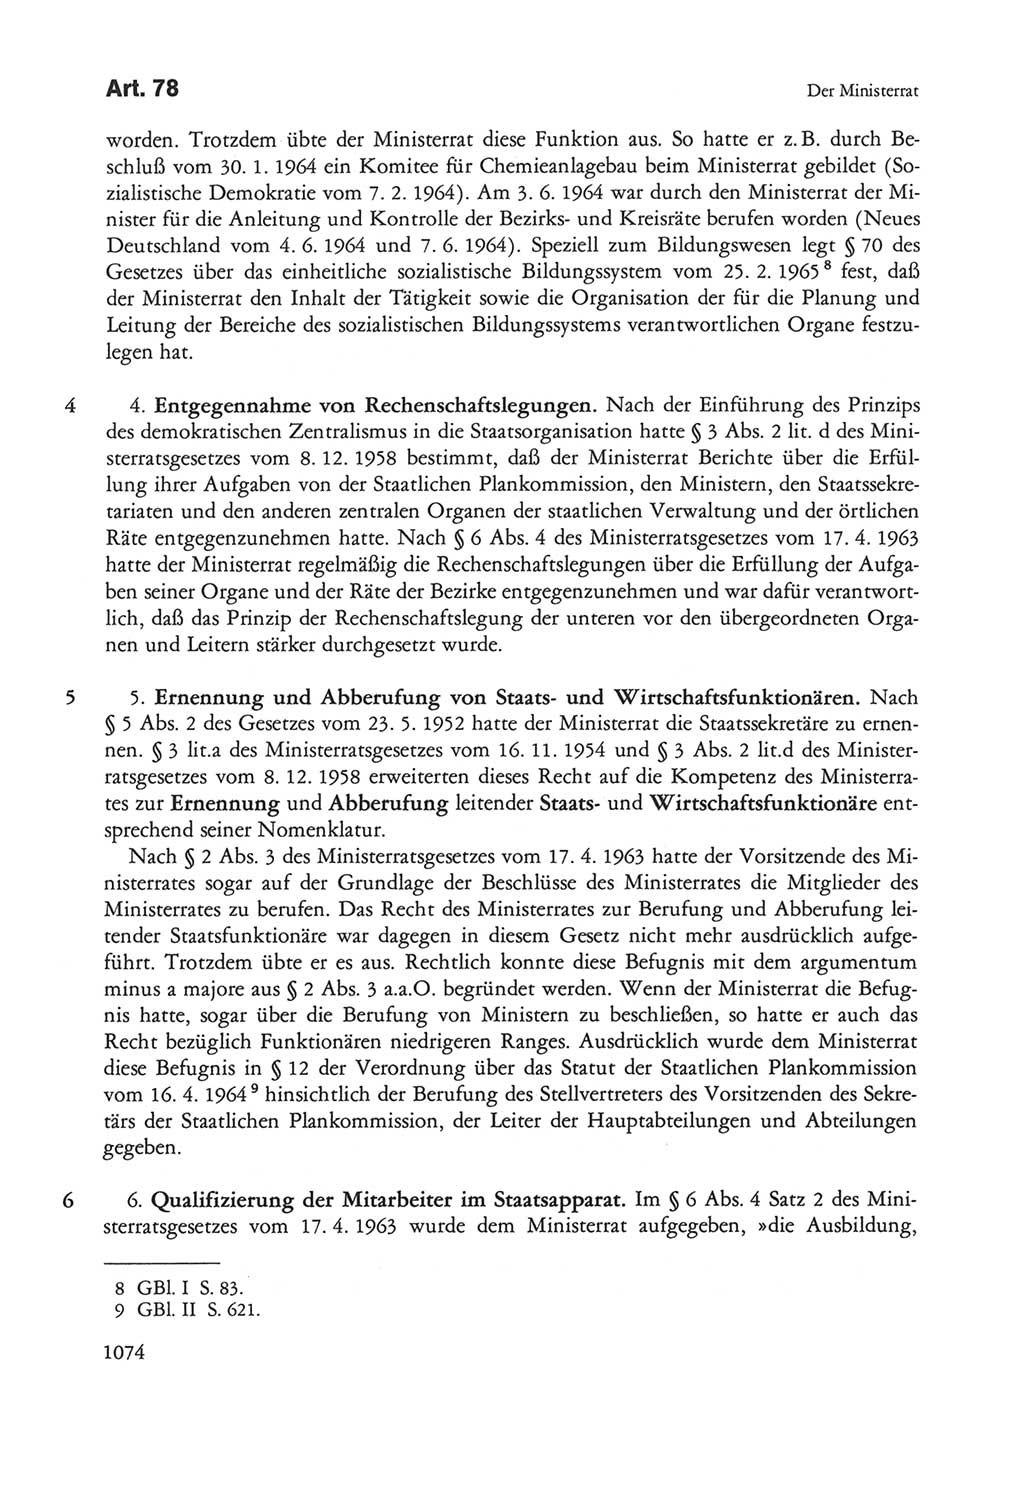 Die sozialistische Verfassung der Deutschen Demokratischen Republik (DDR), Kommentar 1982, Seite 1074 (Soz. Verf. DDR Komm. 1982, S. 1074)